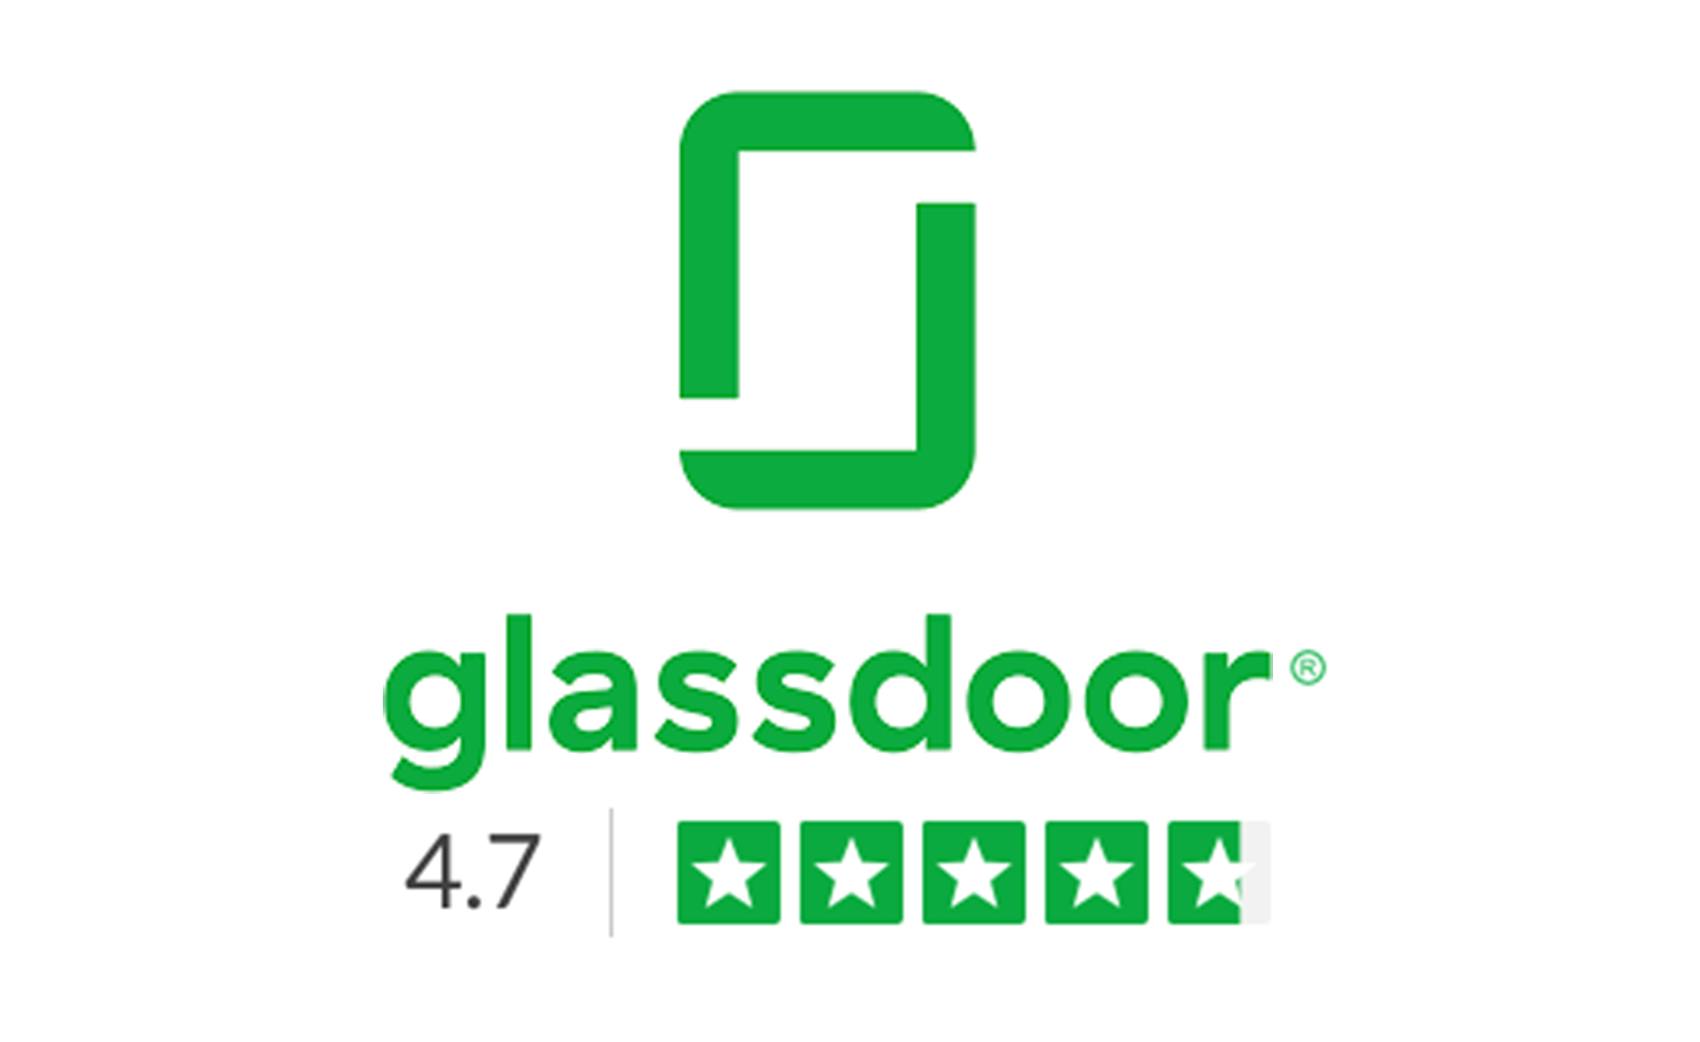 Glassdoor rating